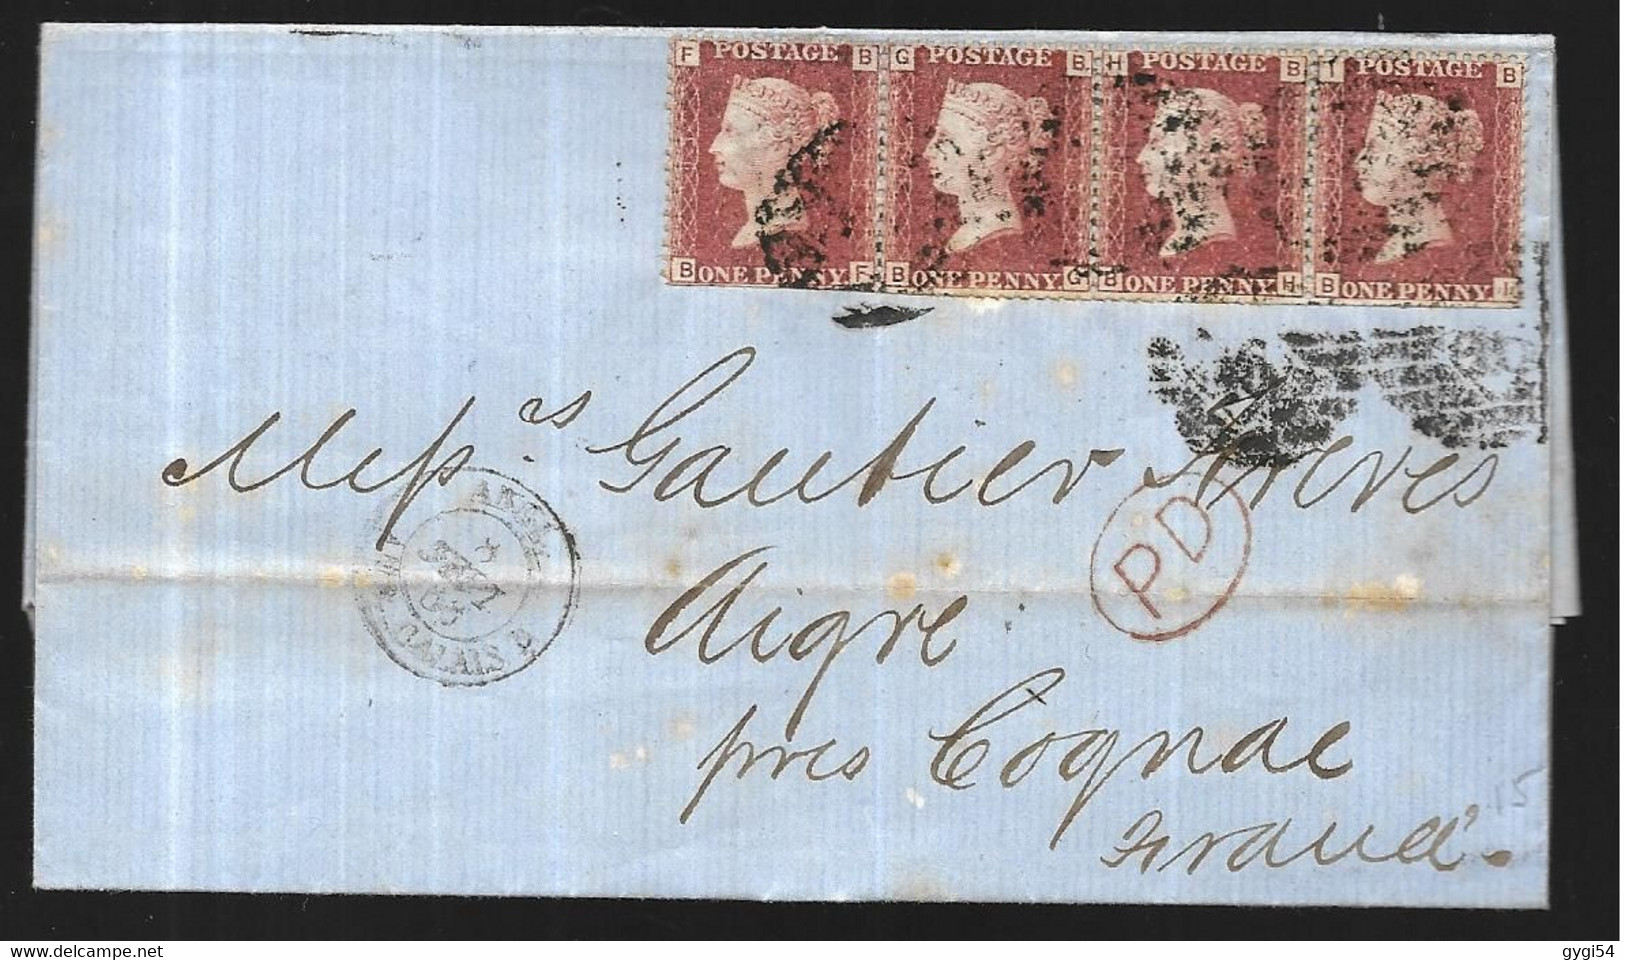 Grande Bretagne   Lettre  Du 08 09 1866 De LONDRES Pour Aigre  ( Charente ) Affranchissement Bande De 4 Du N° 26 ( YT ) - Briefe U. Dokumente